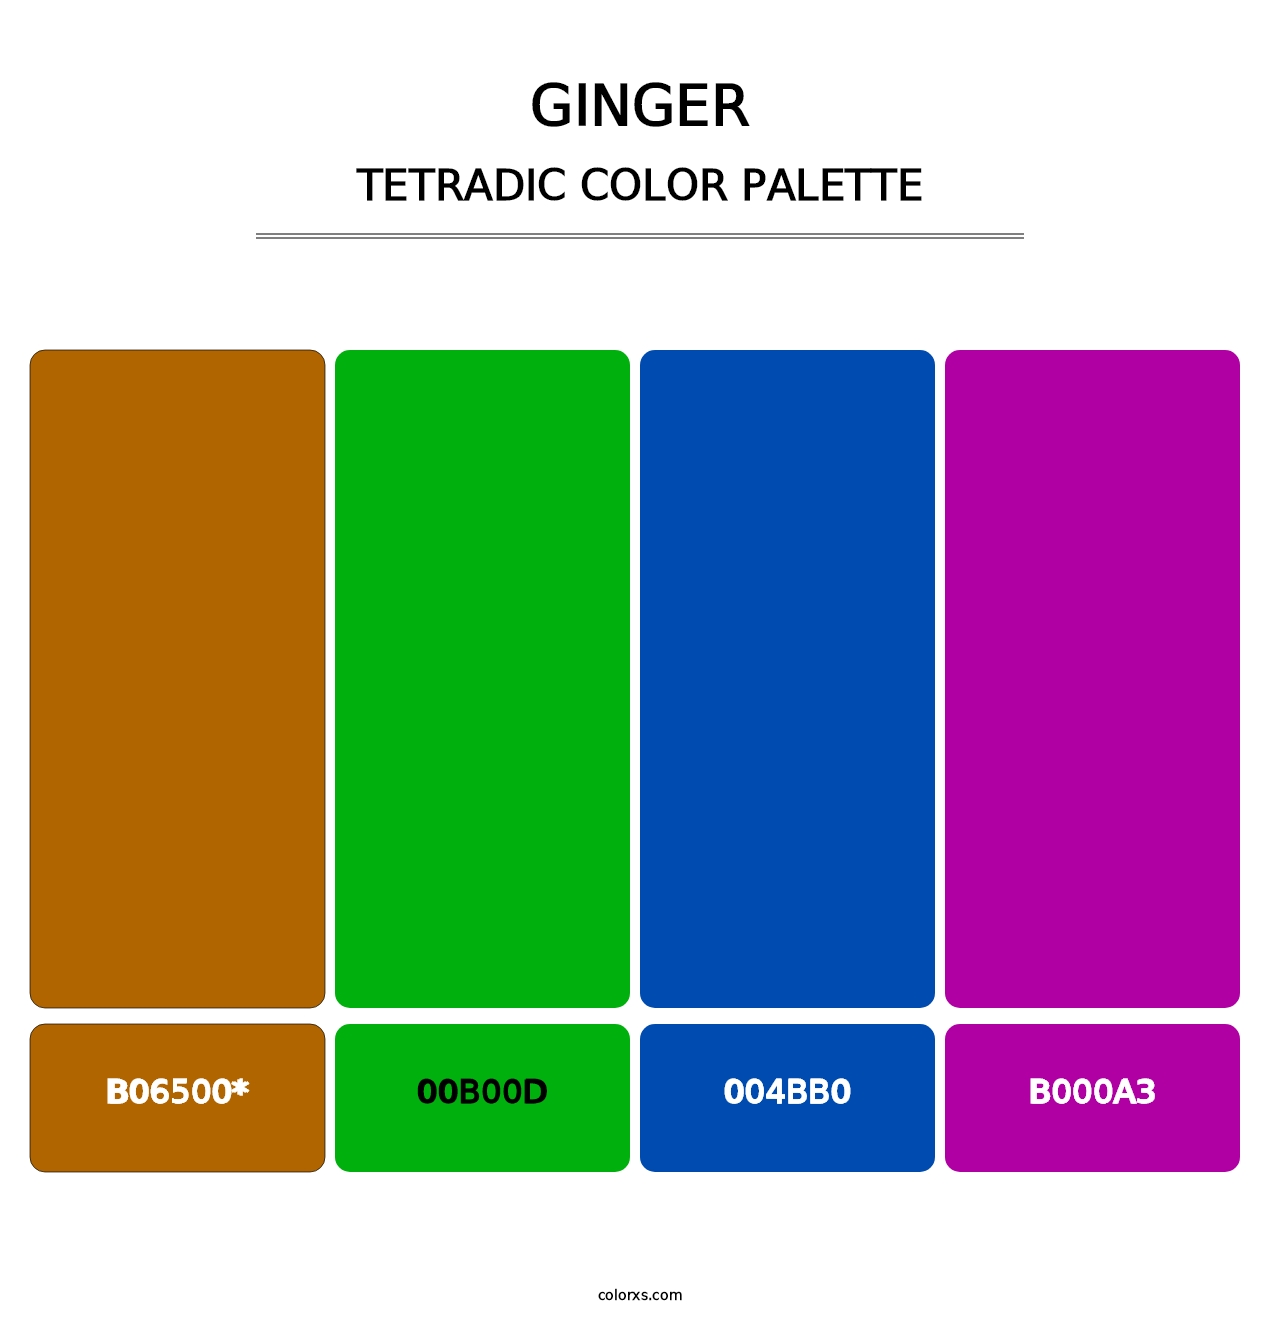 Ginger - Tetradic Color Palette